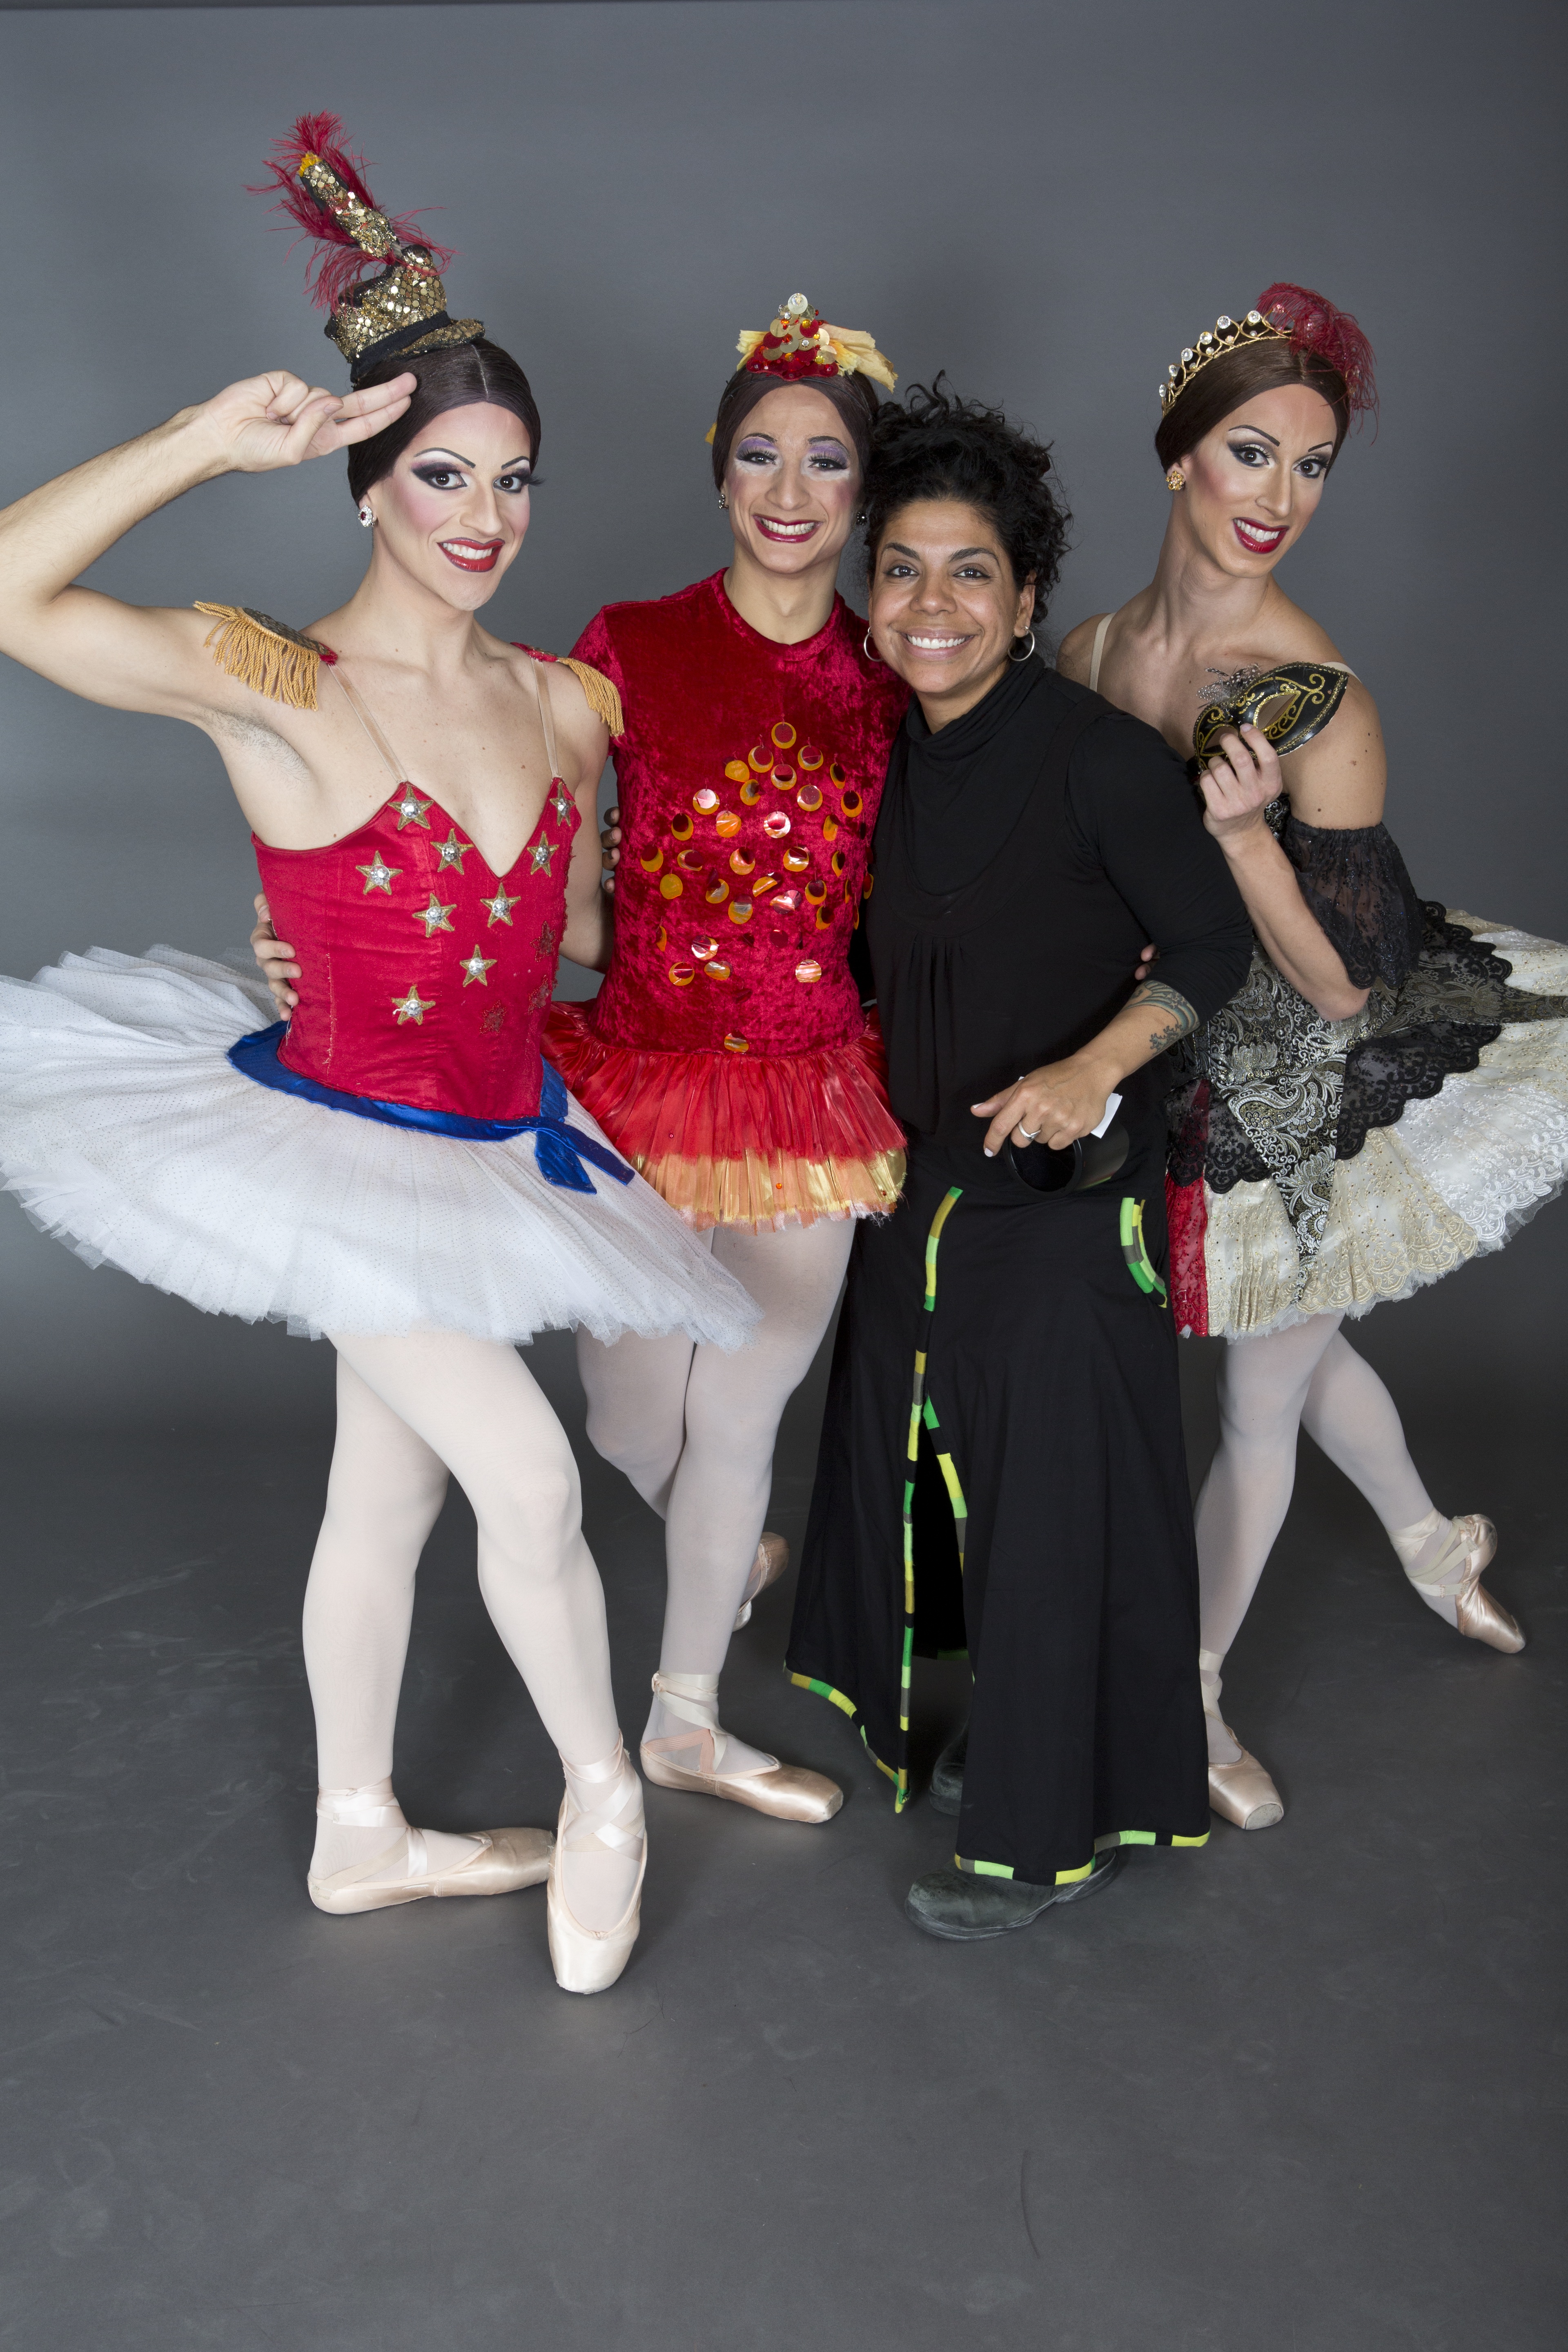 Isabel Martínez Rivera y miembros de Ballets Trockadero. Foto: Zoran Jelenic